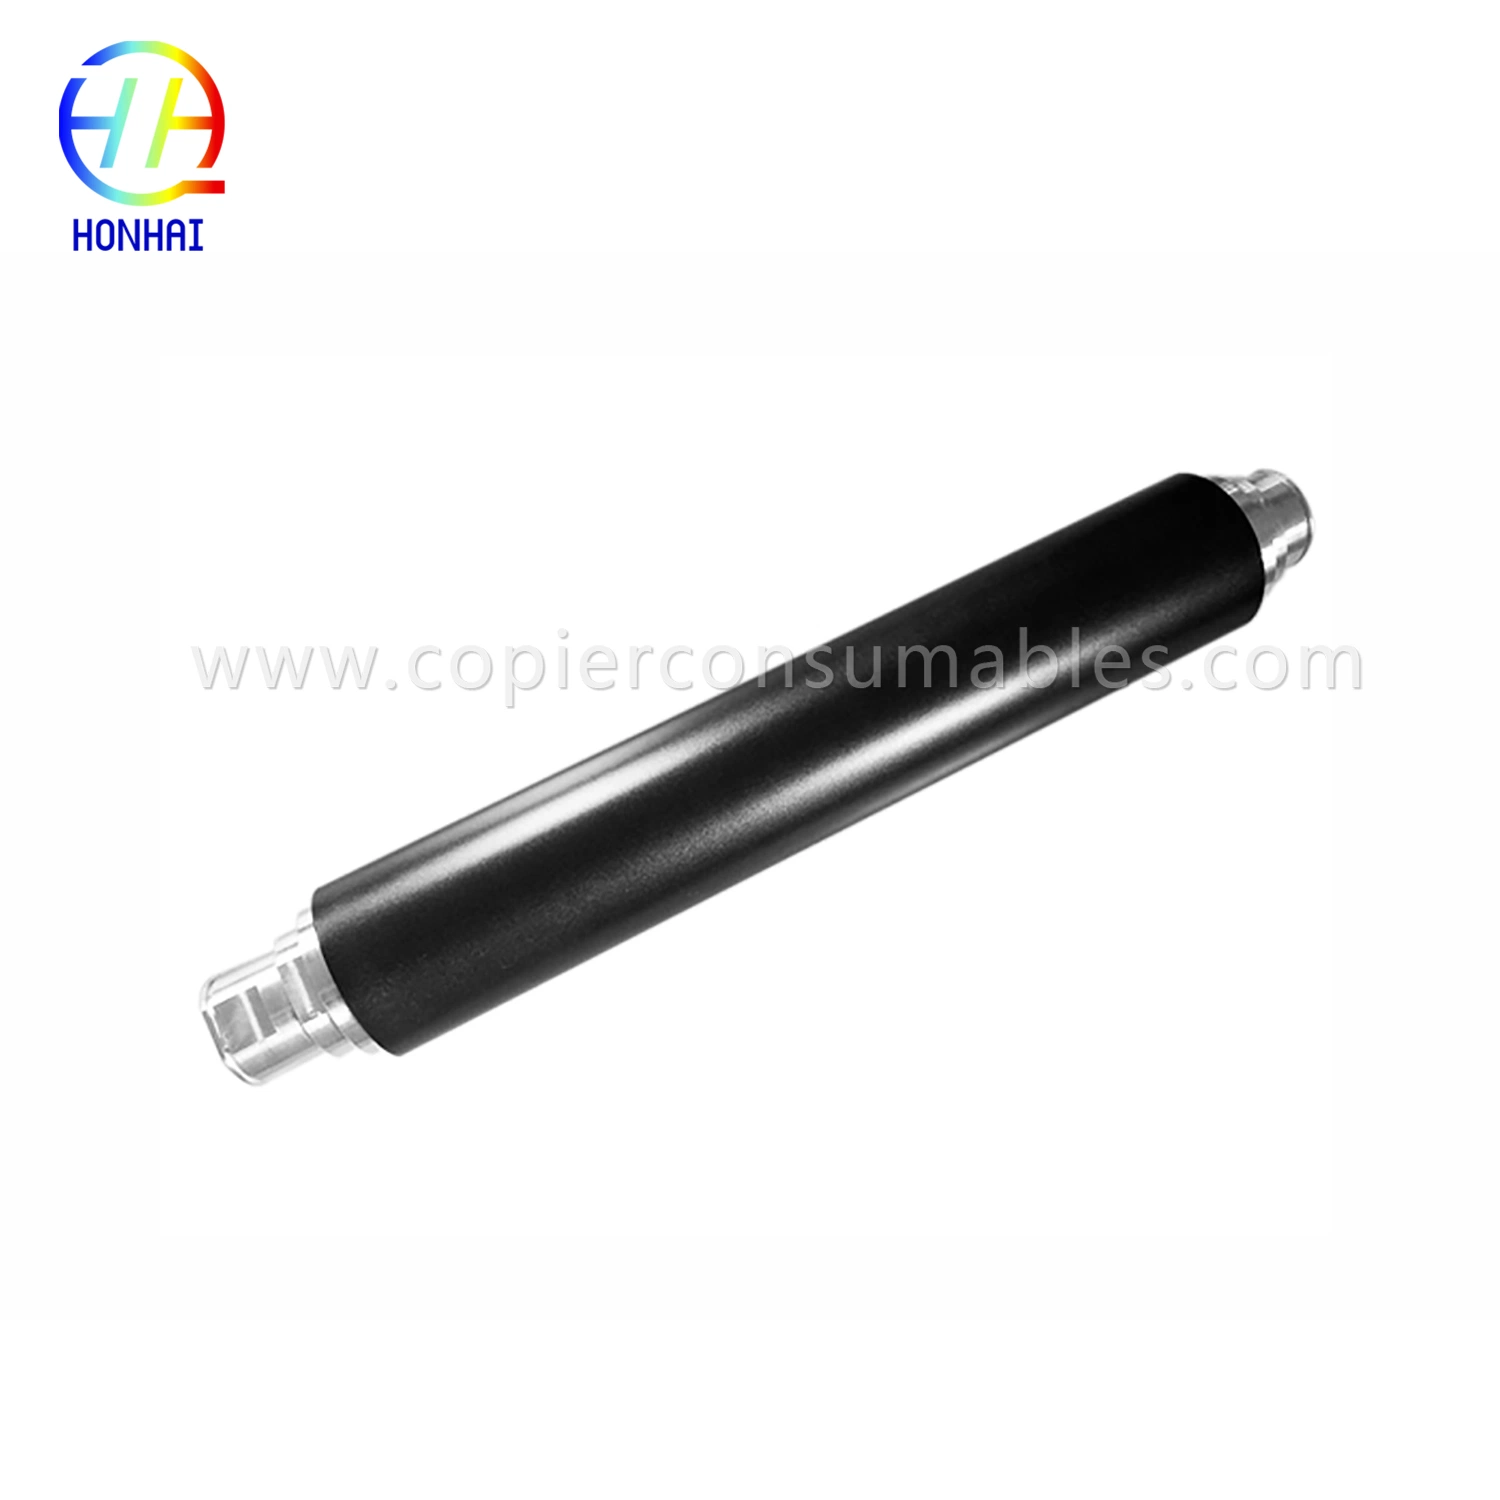 Upper Fuser Roller for Xerox 4110 4112 4127 4590 4595 Compatible Black